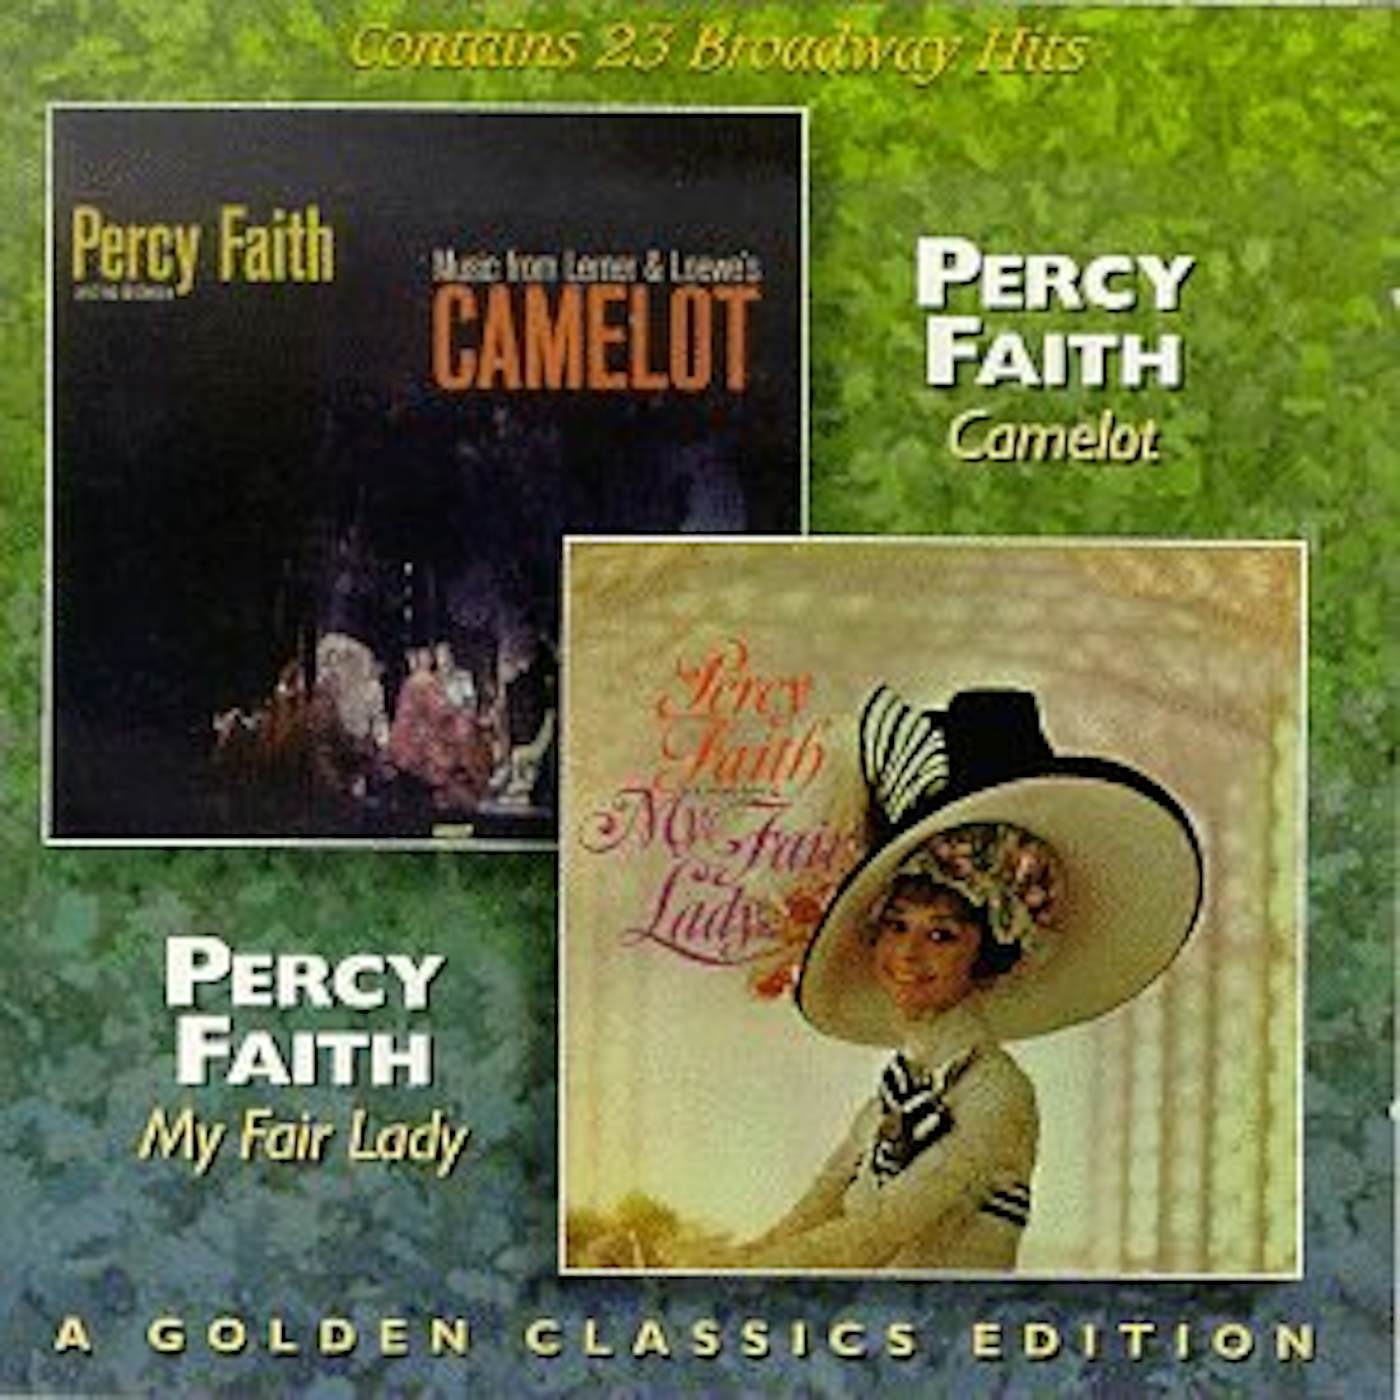 Percy Faith CAMELOT / MY FAIR LADY CD